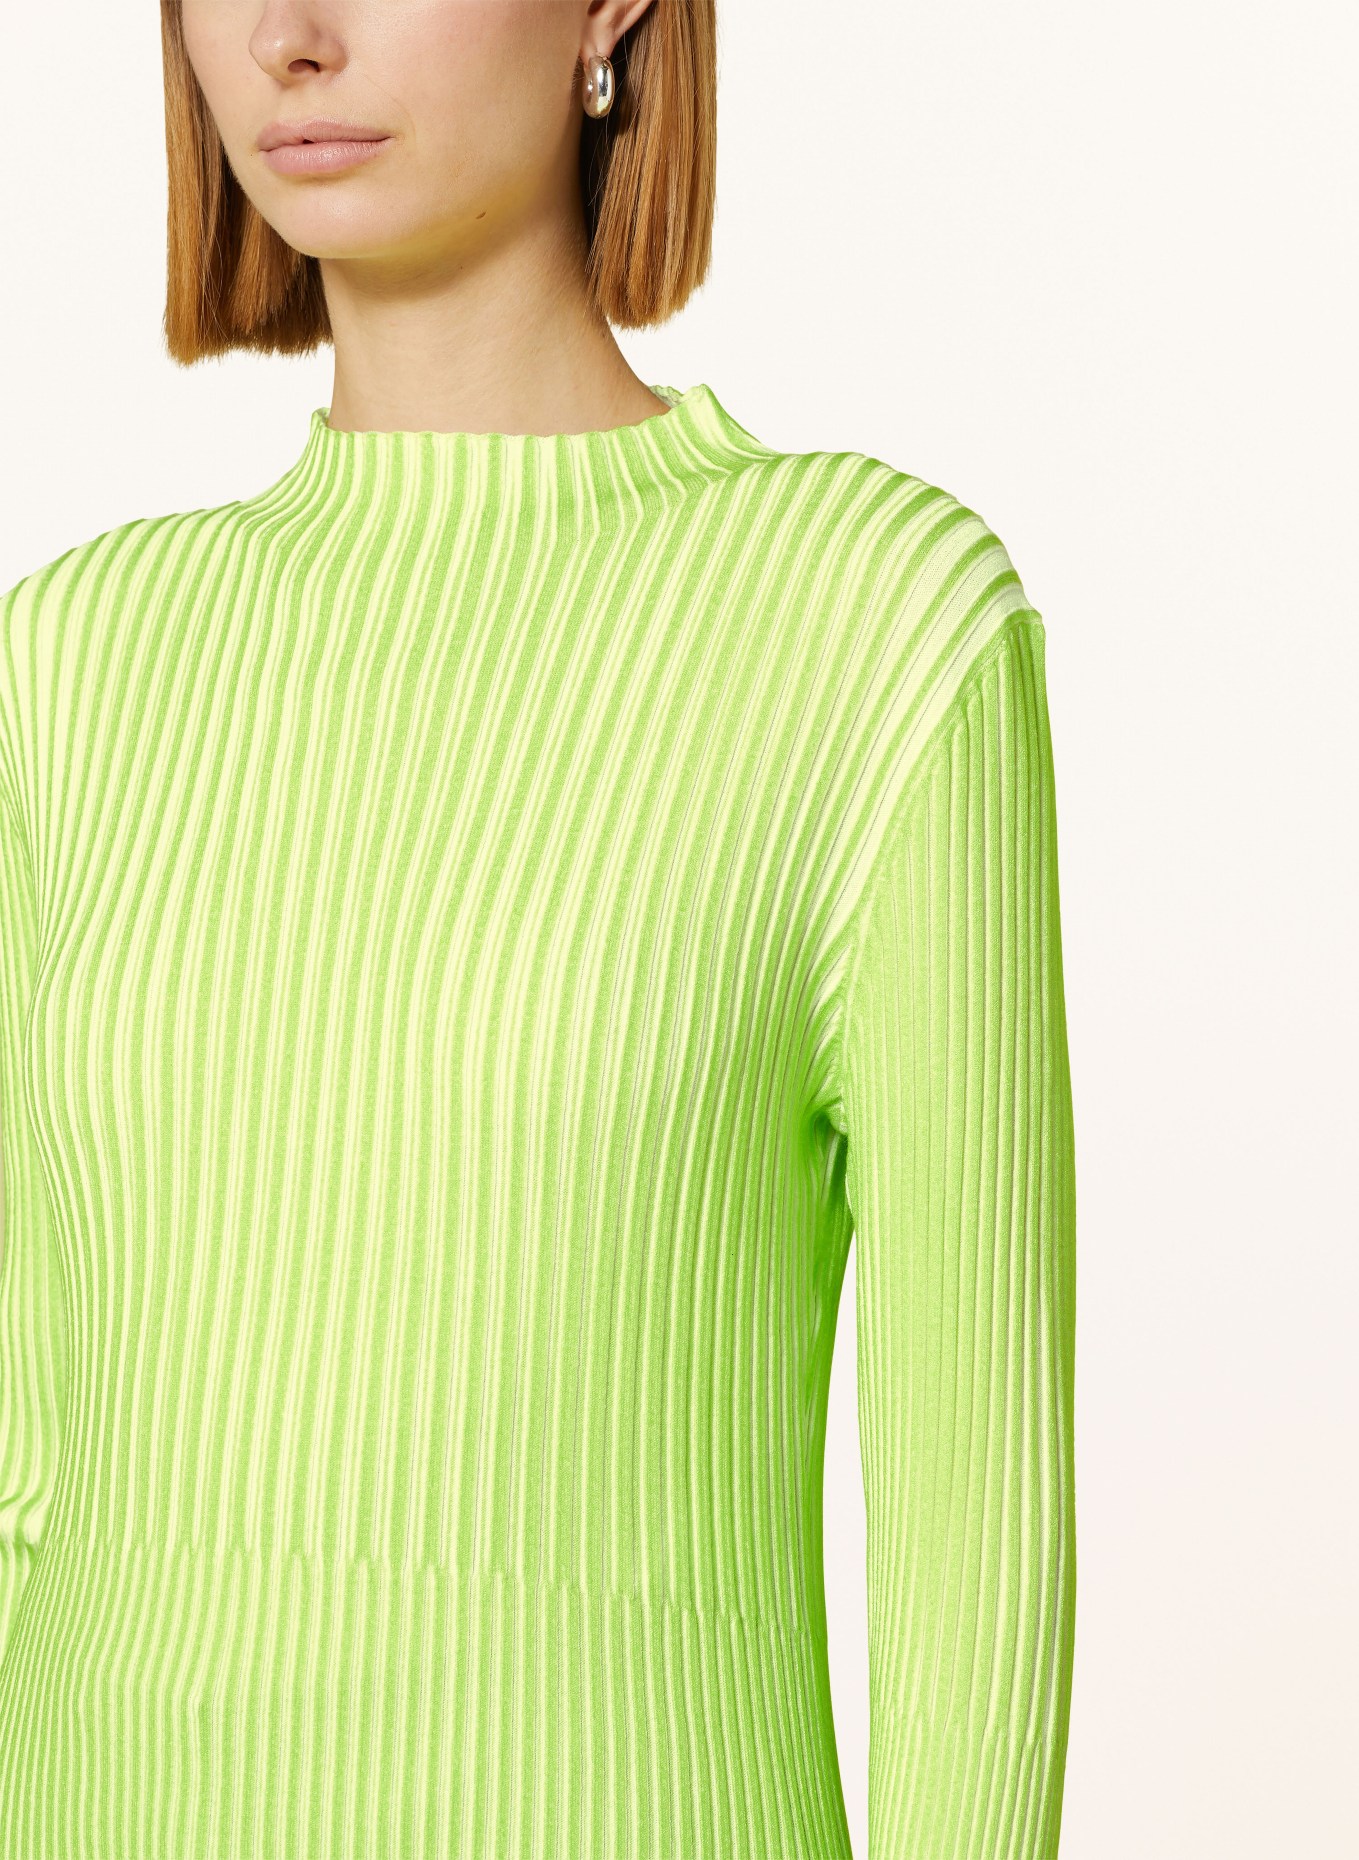 ULLI EHRLICH SPORTALM Sweater, Color: NEON GREEN/ ECRU (Image 4)